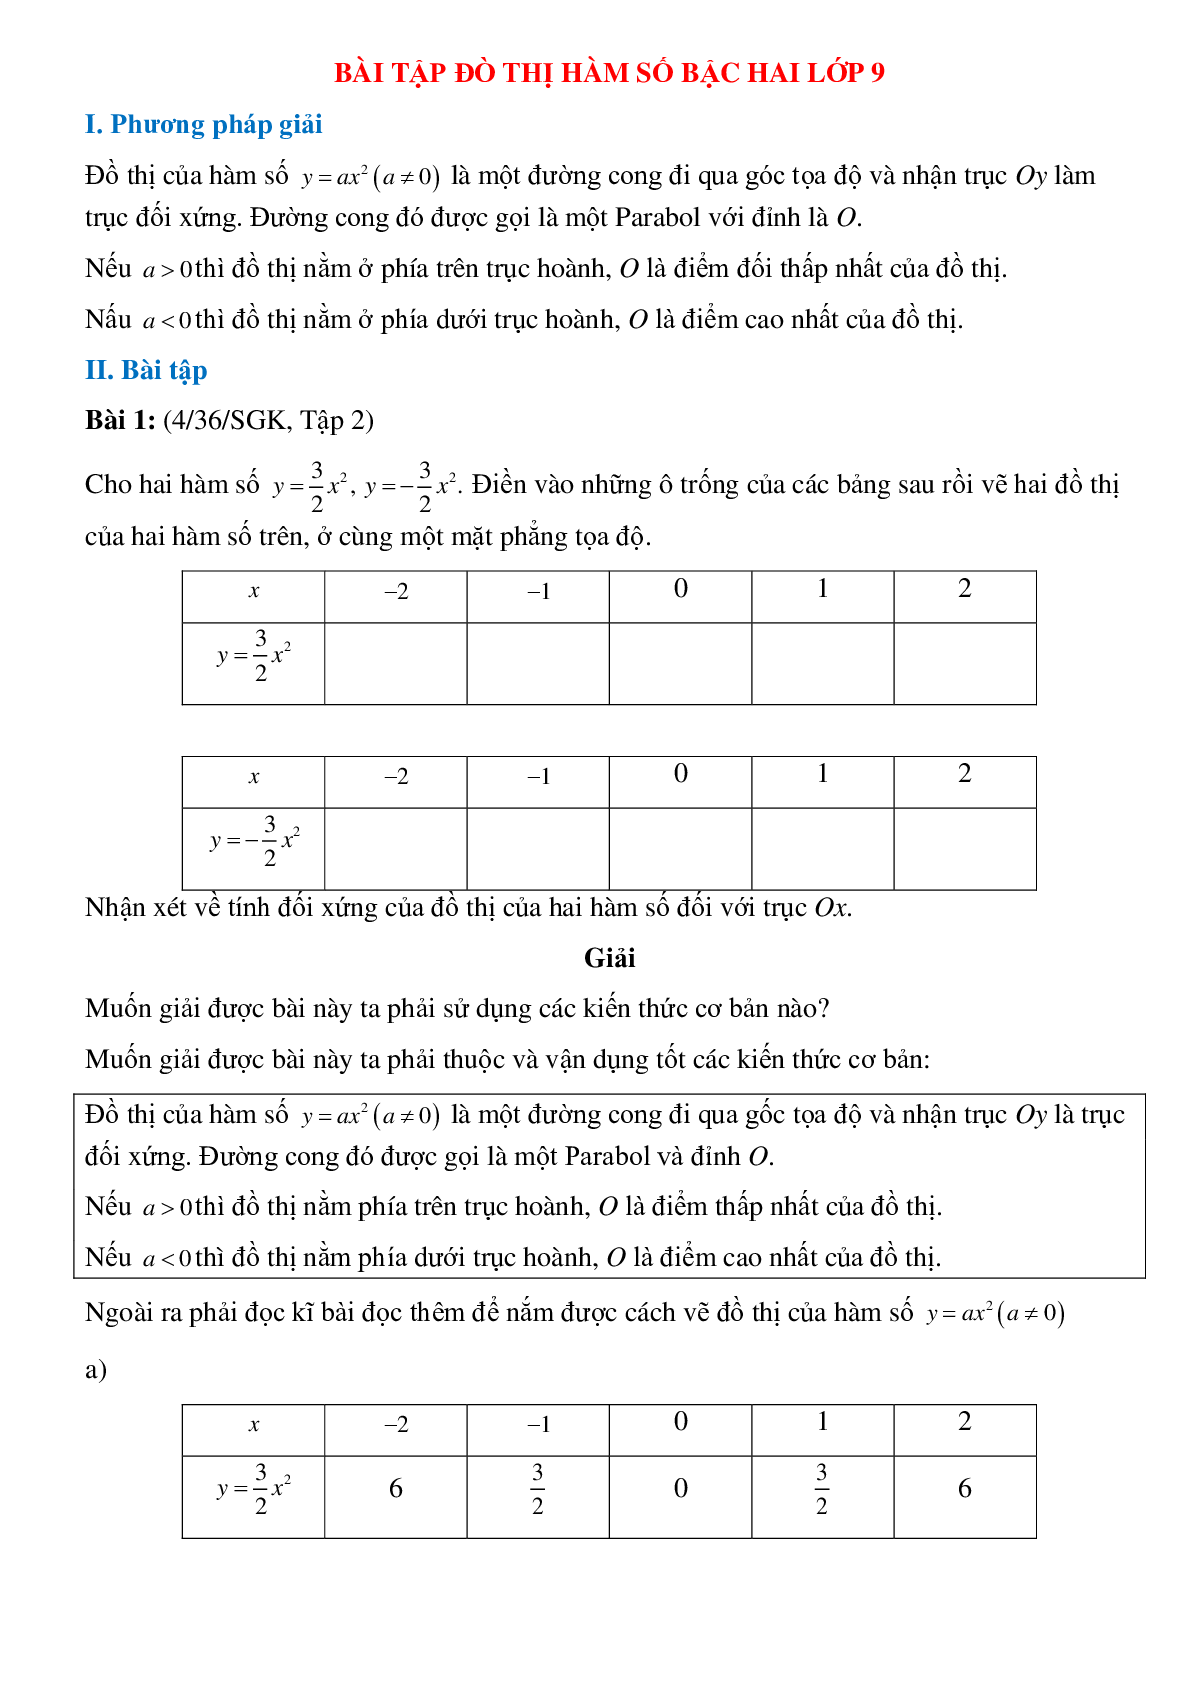 50 Bài tập Đồ thị hàm số y = ax^2 (a ≠ 0) (có đáp án)- Toán 9 (trang 1)